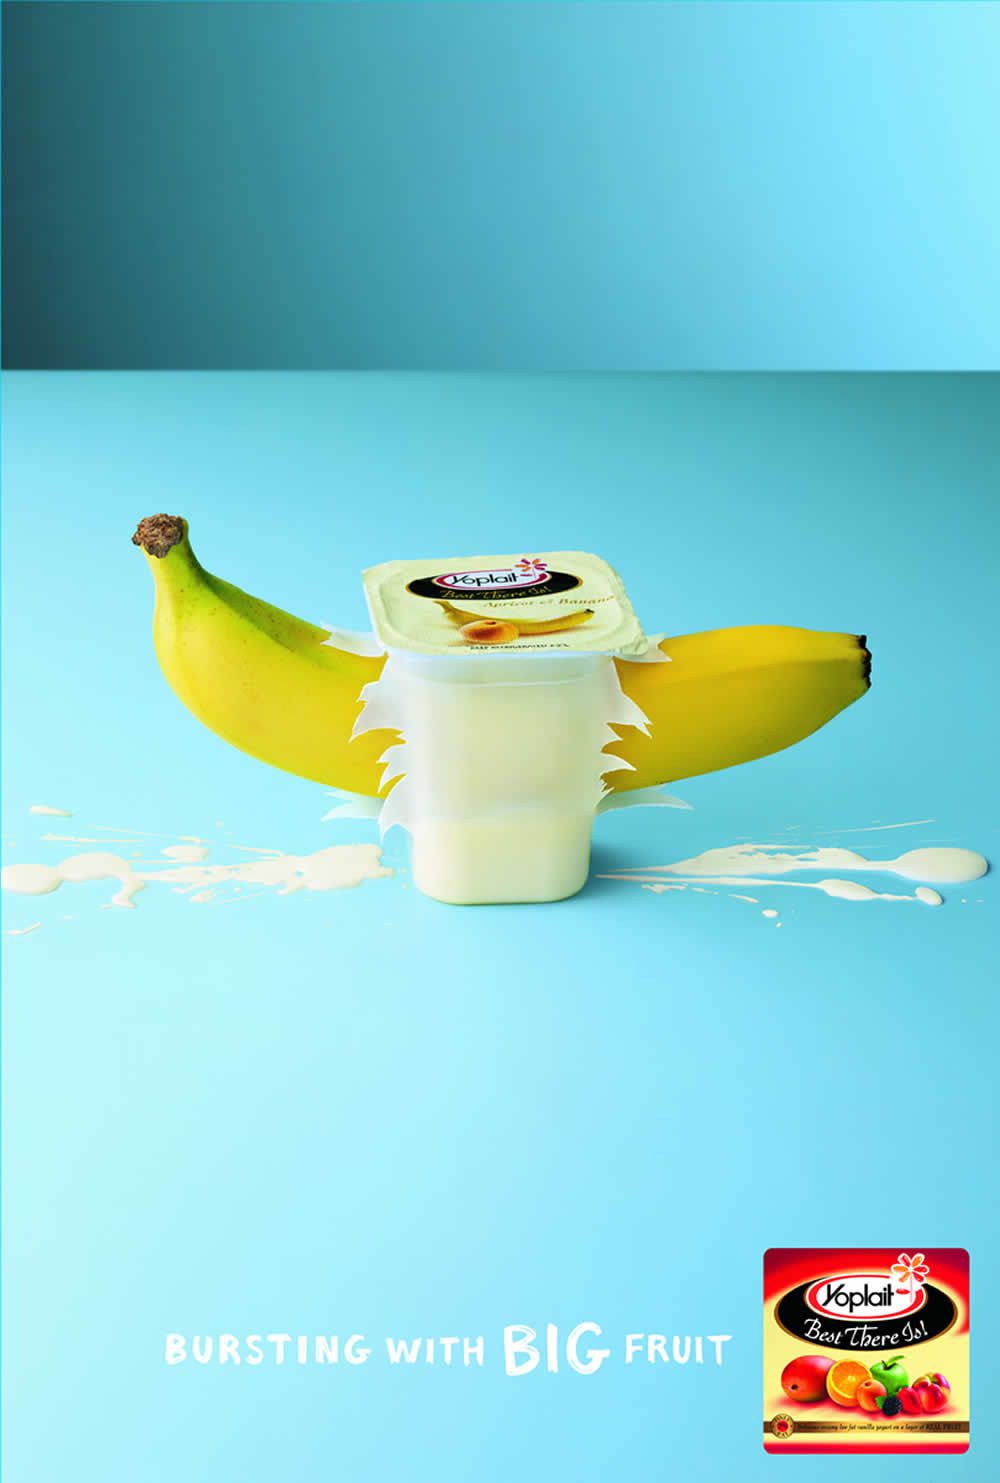 Yoplait-banana-ad